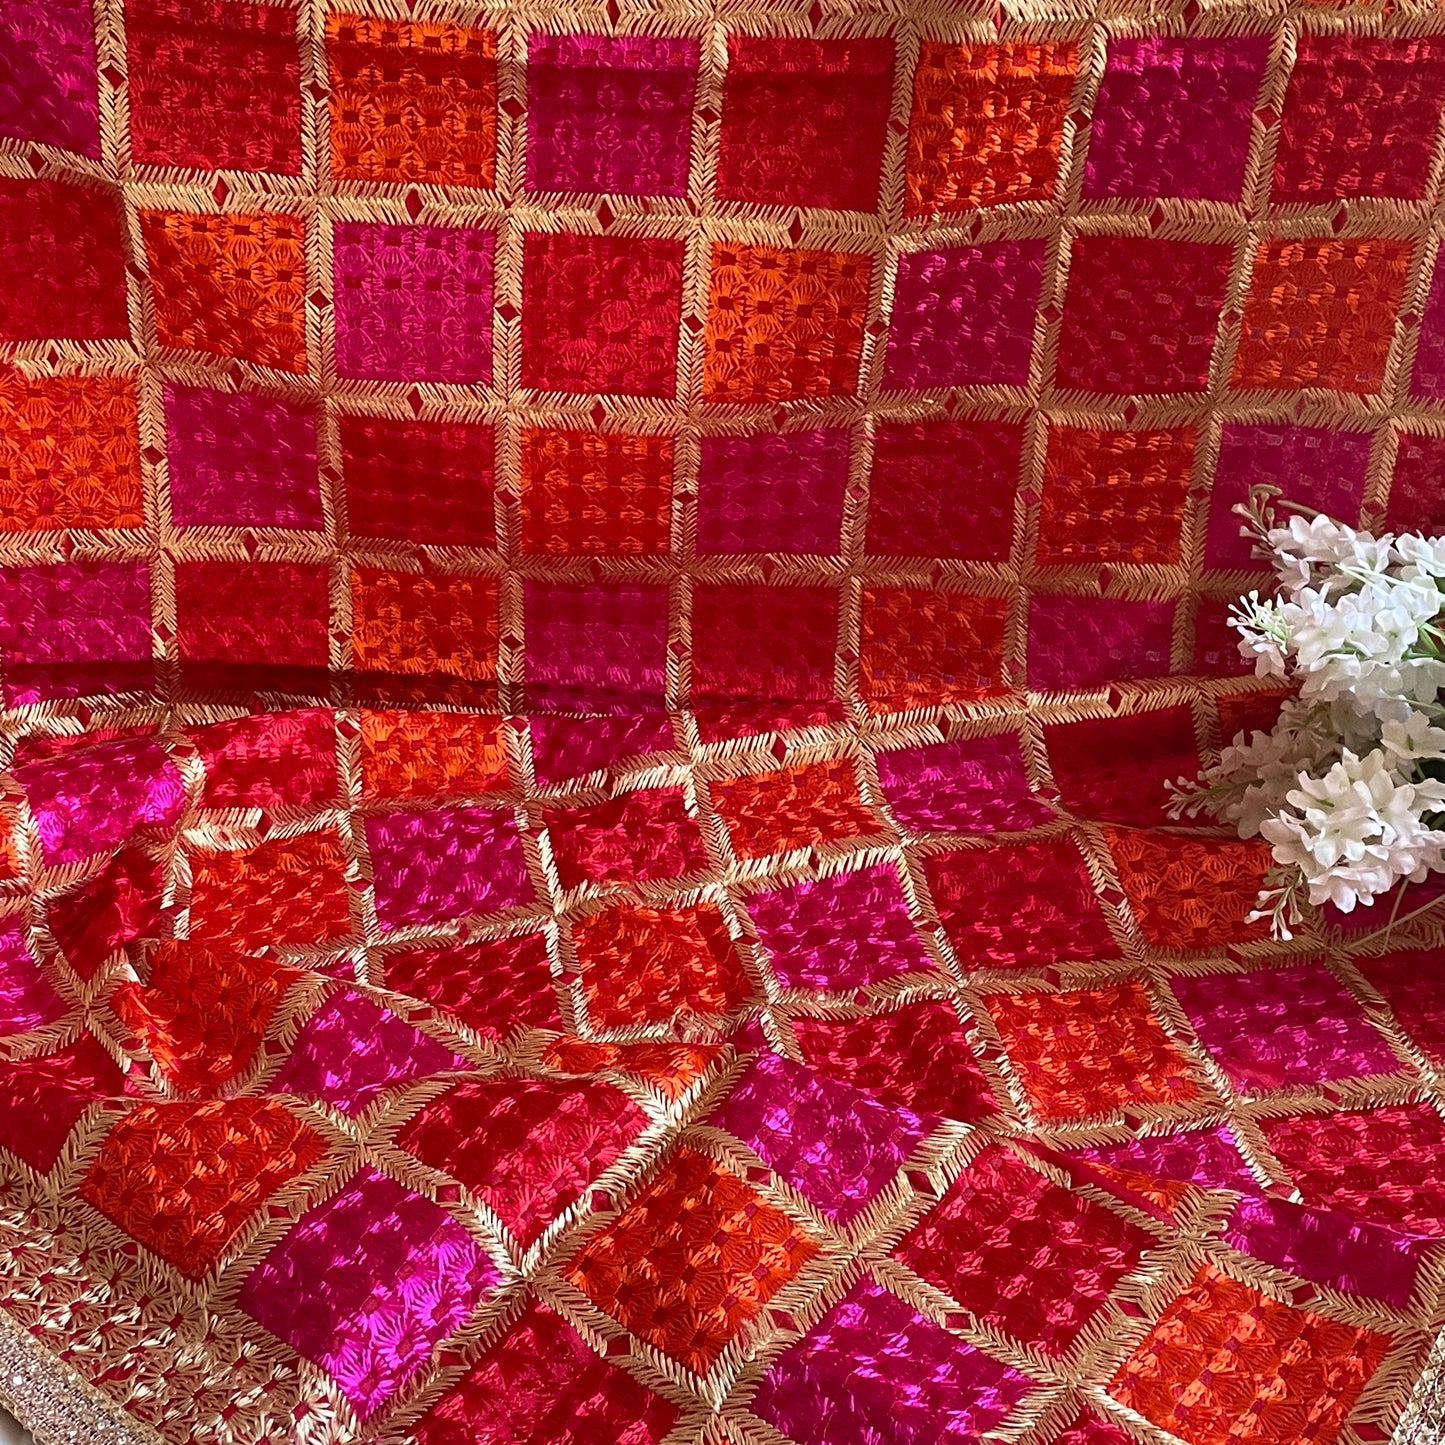 Phulkari Machine-Embroidered Chinnon Dupatta - Red and Pink